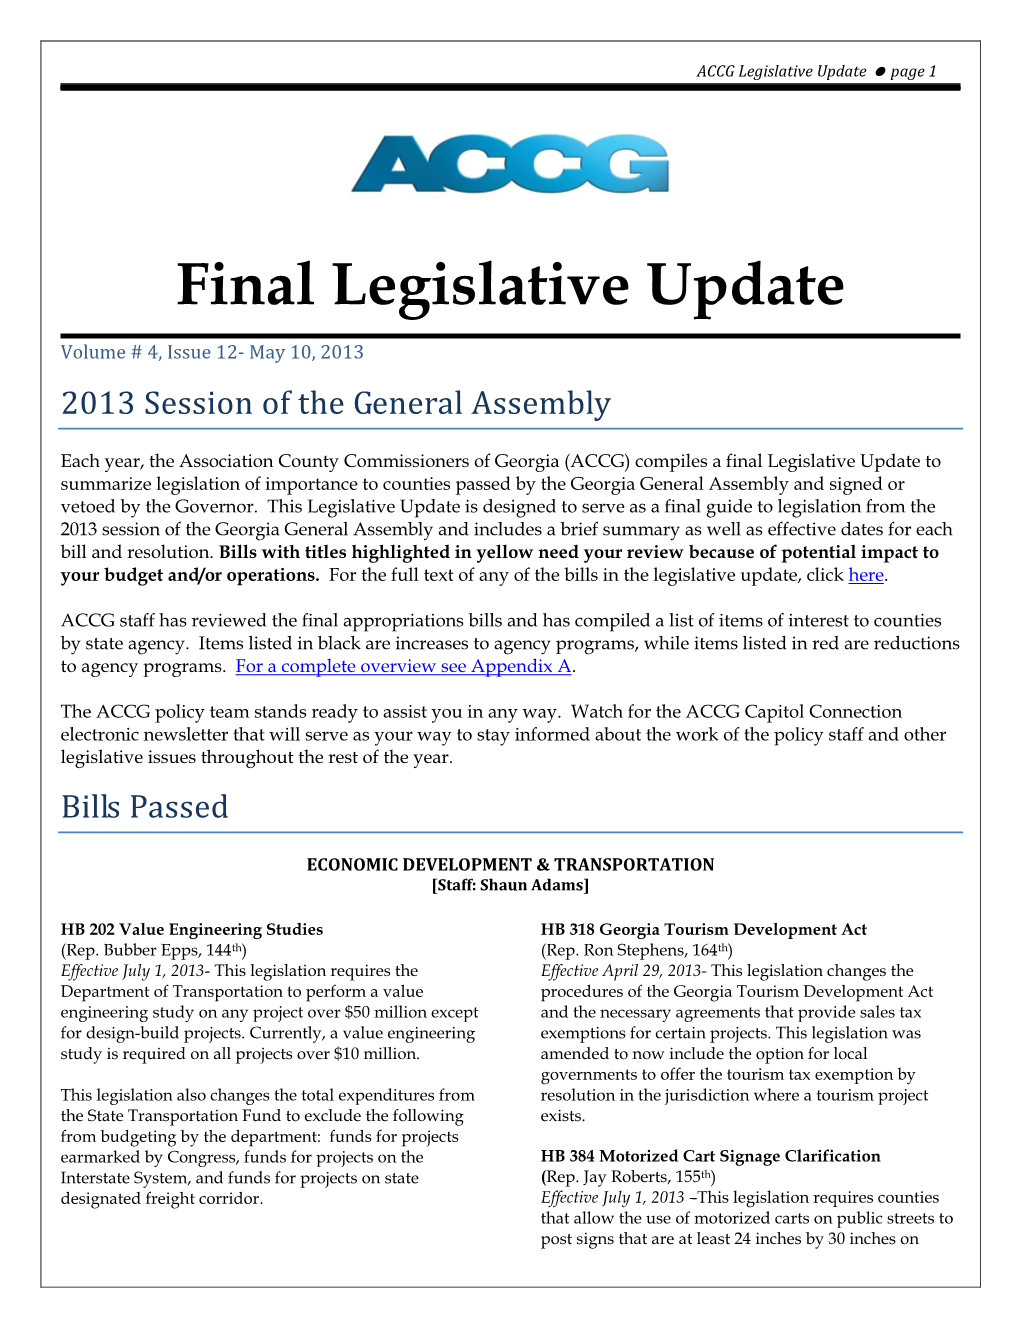 2013 Final Legislative Update